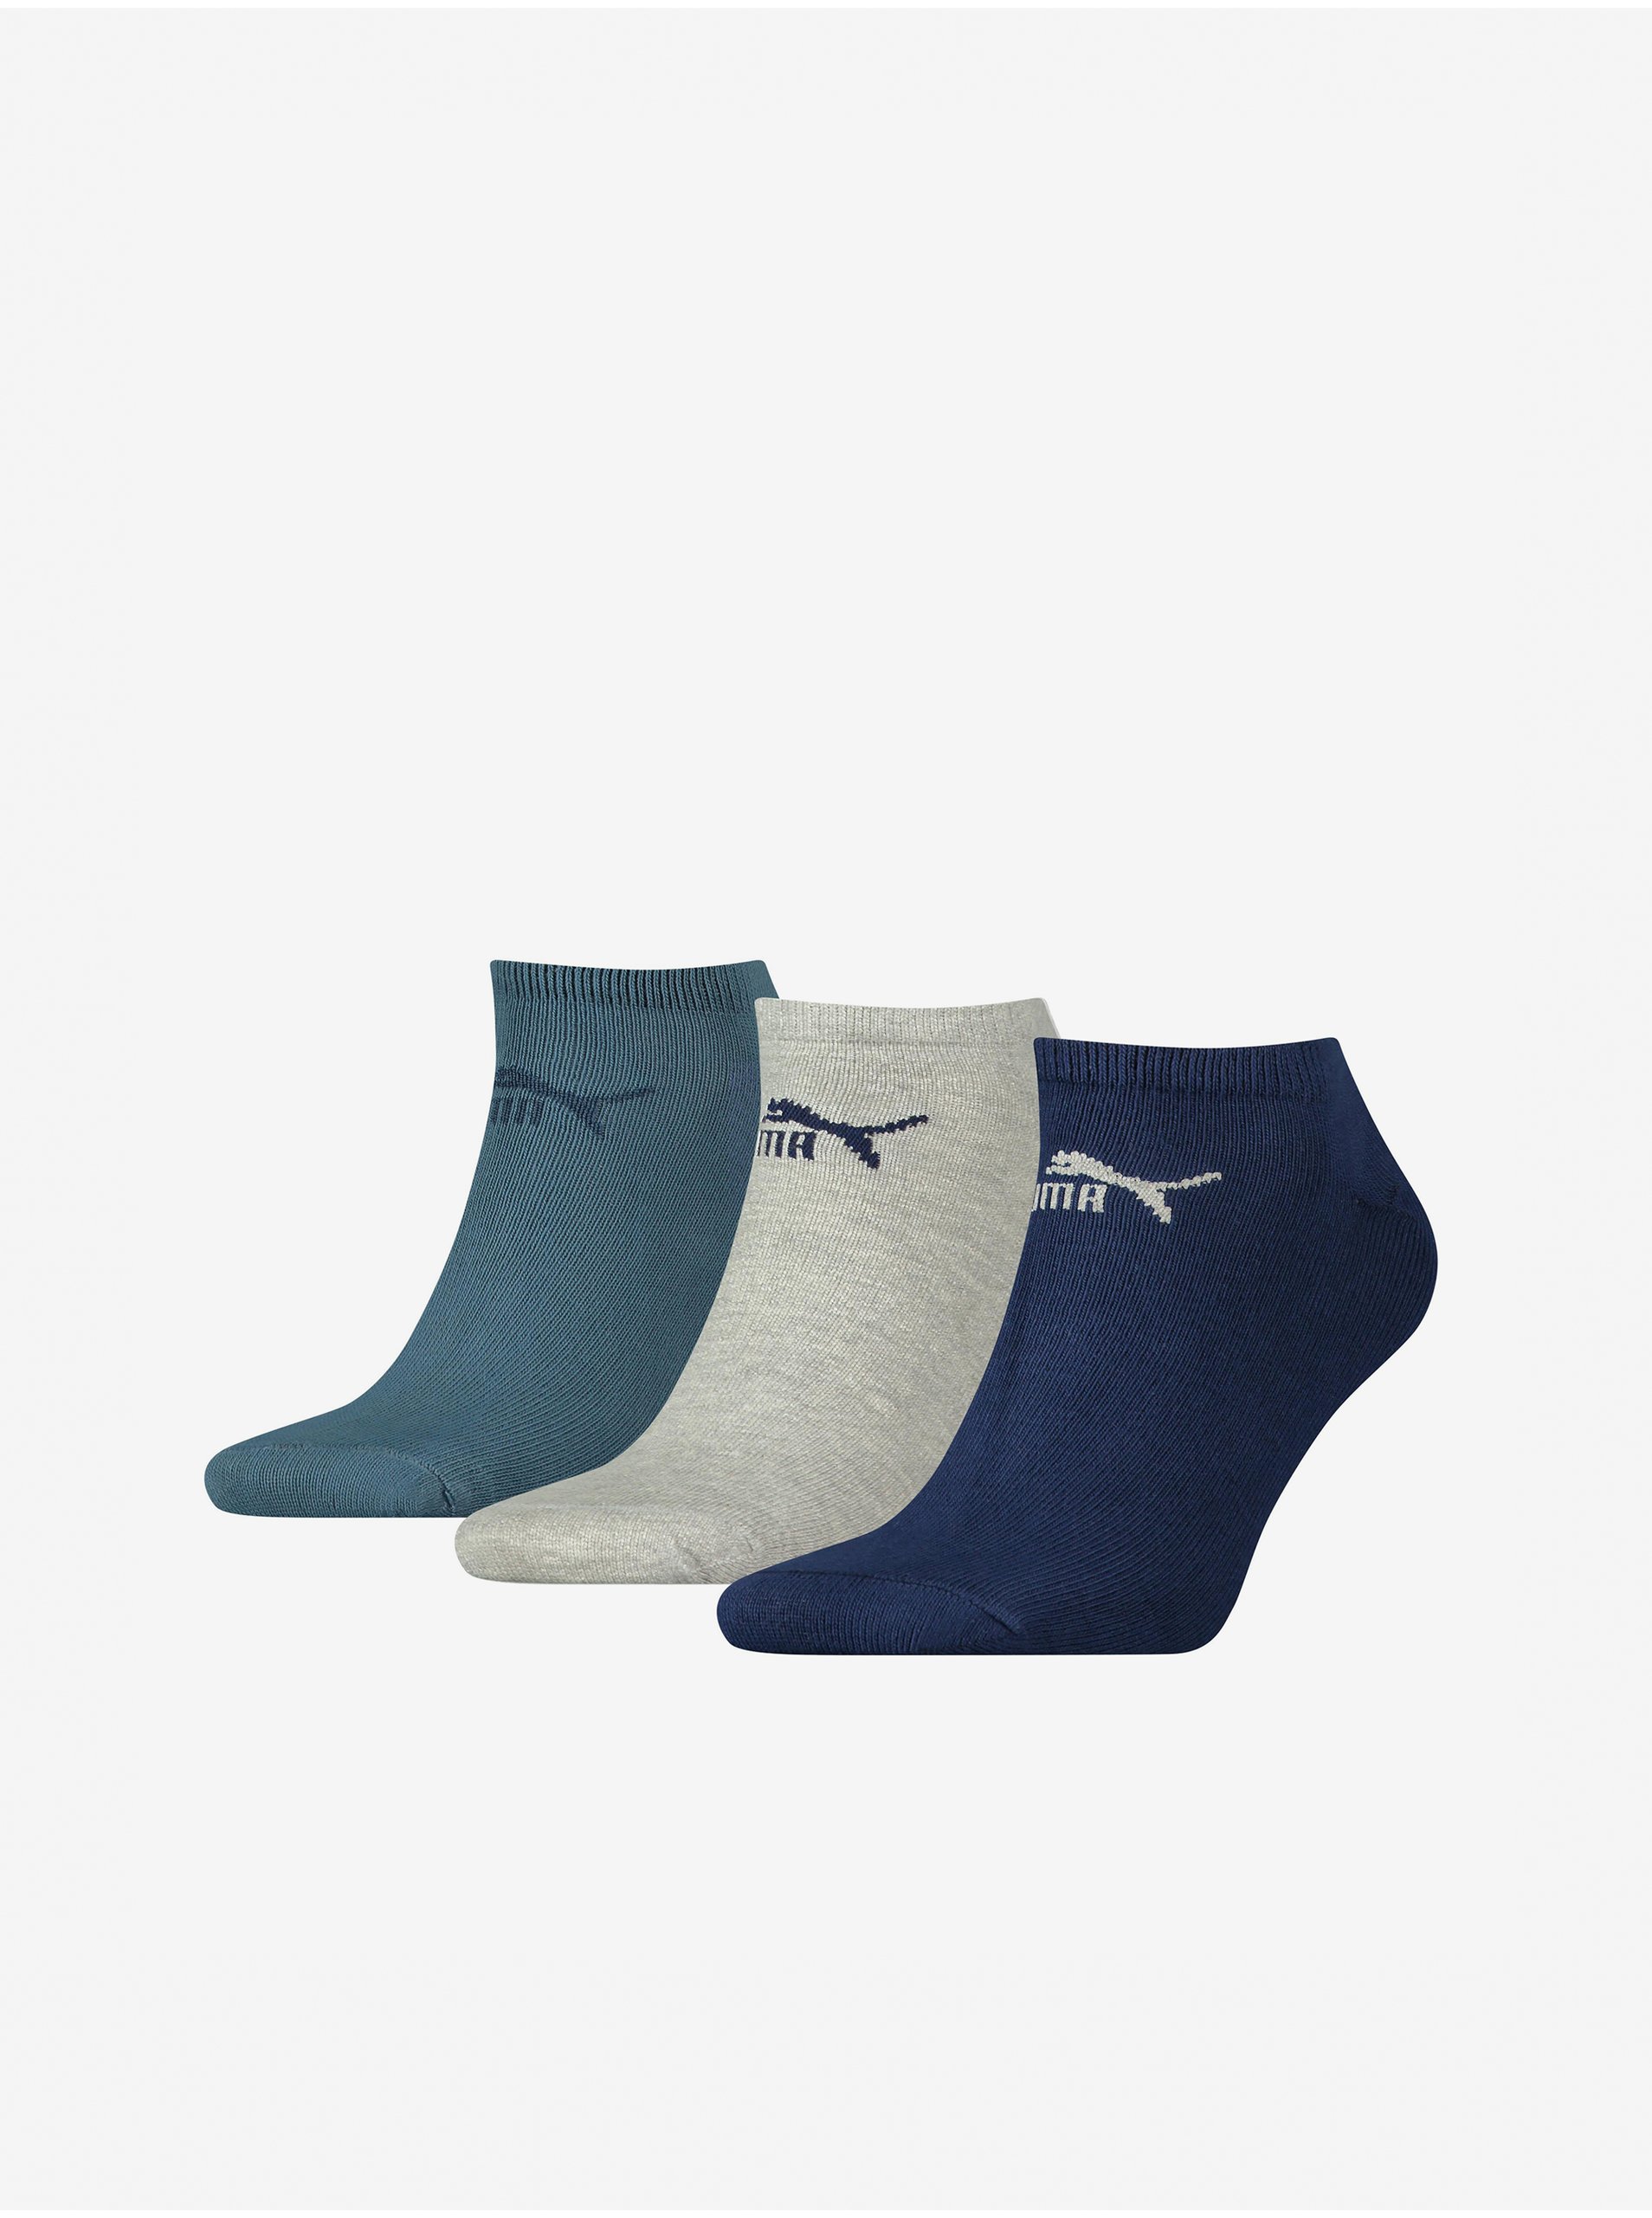 Puma Set of three pairs of socks in kerosene, gray and dark blue Pum - Men